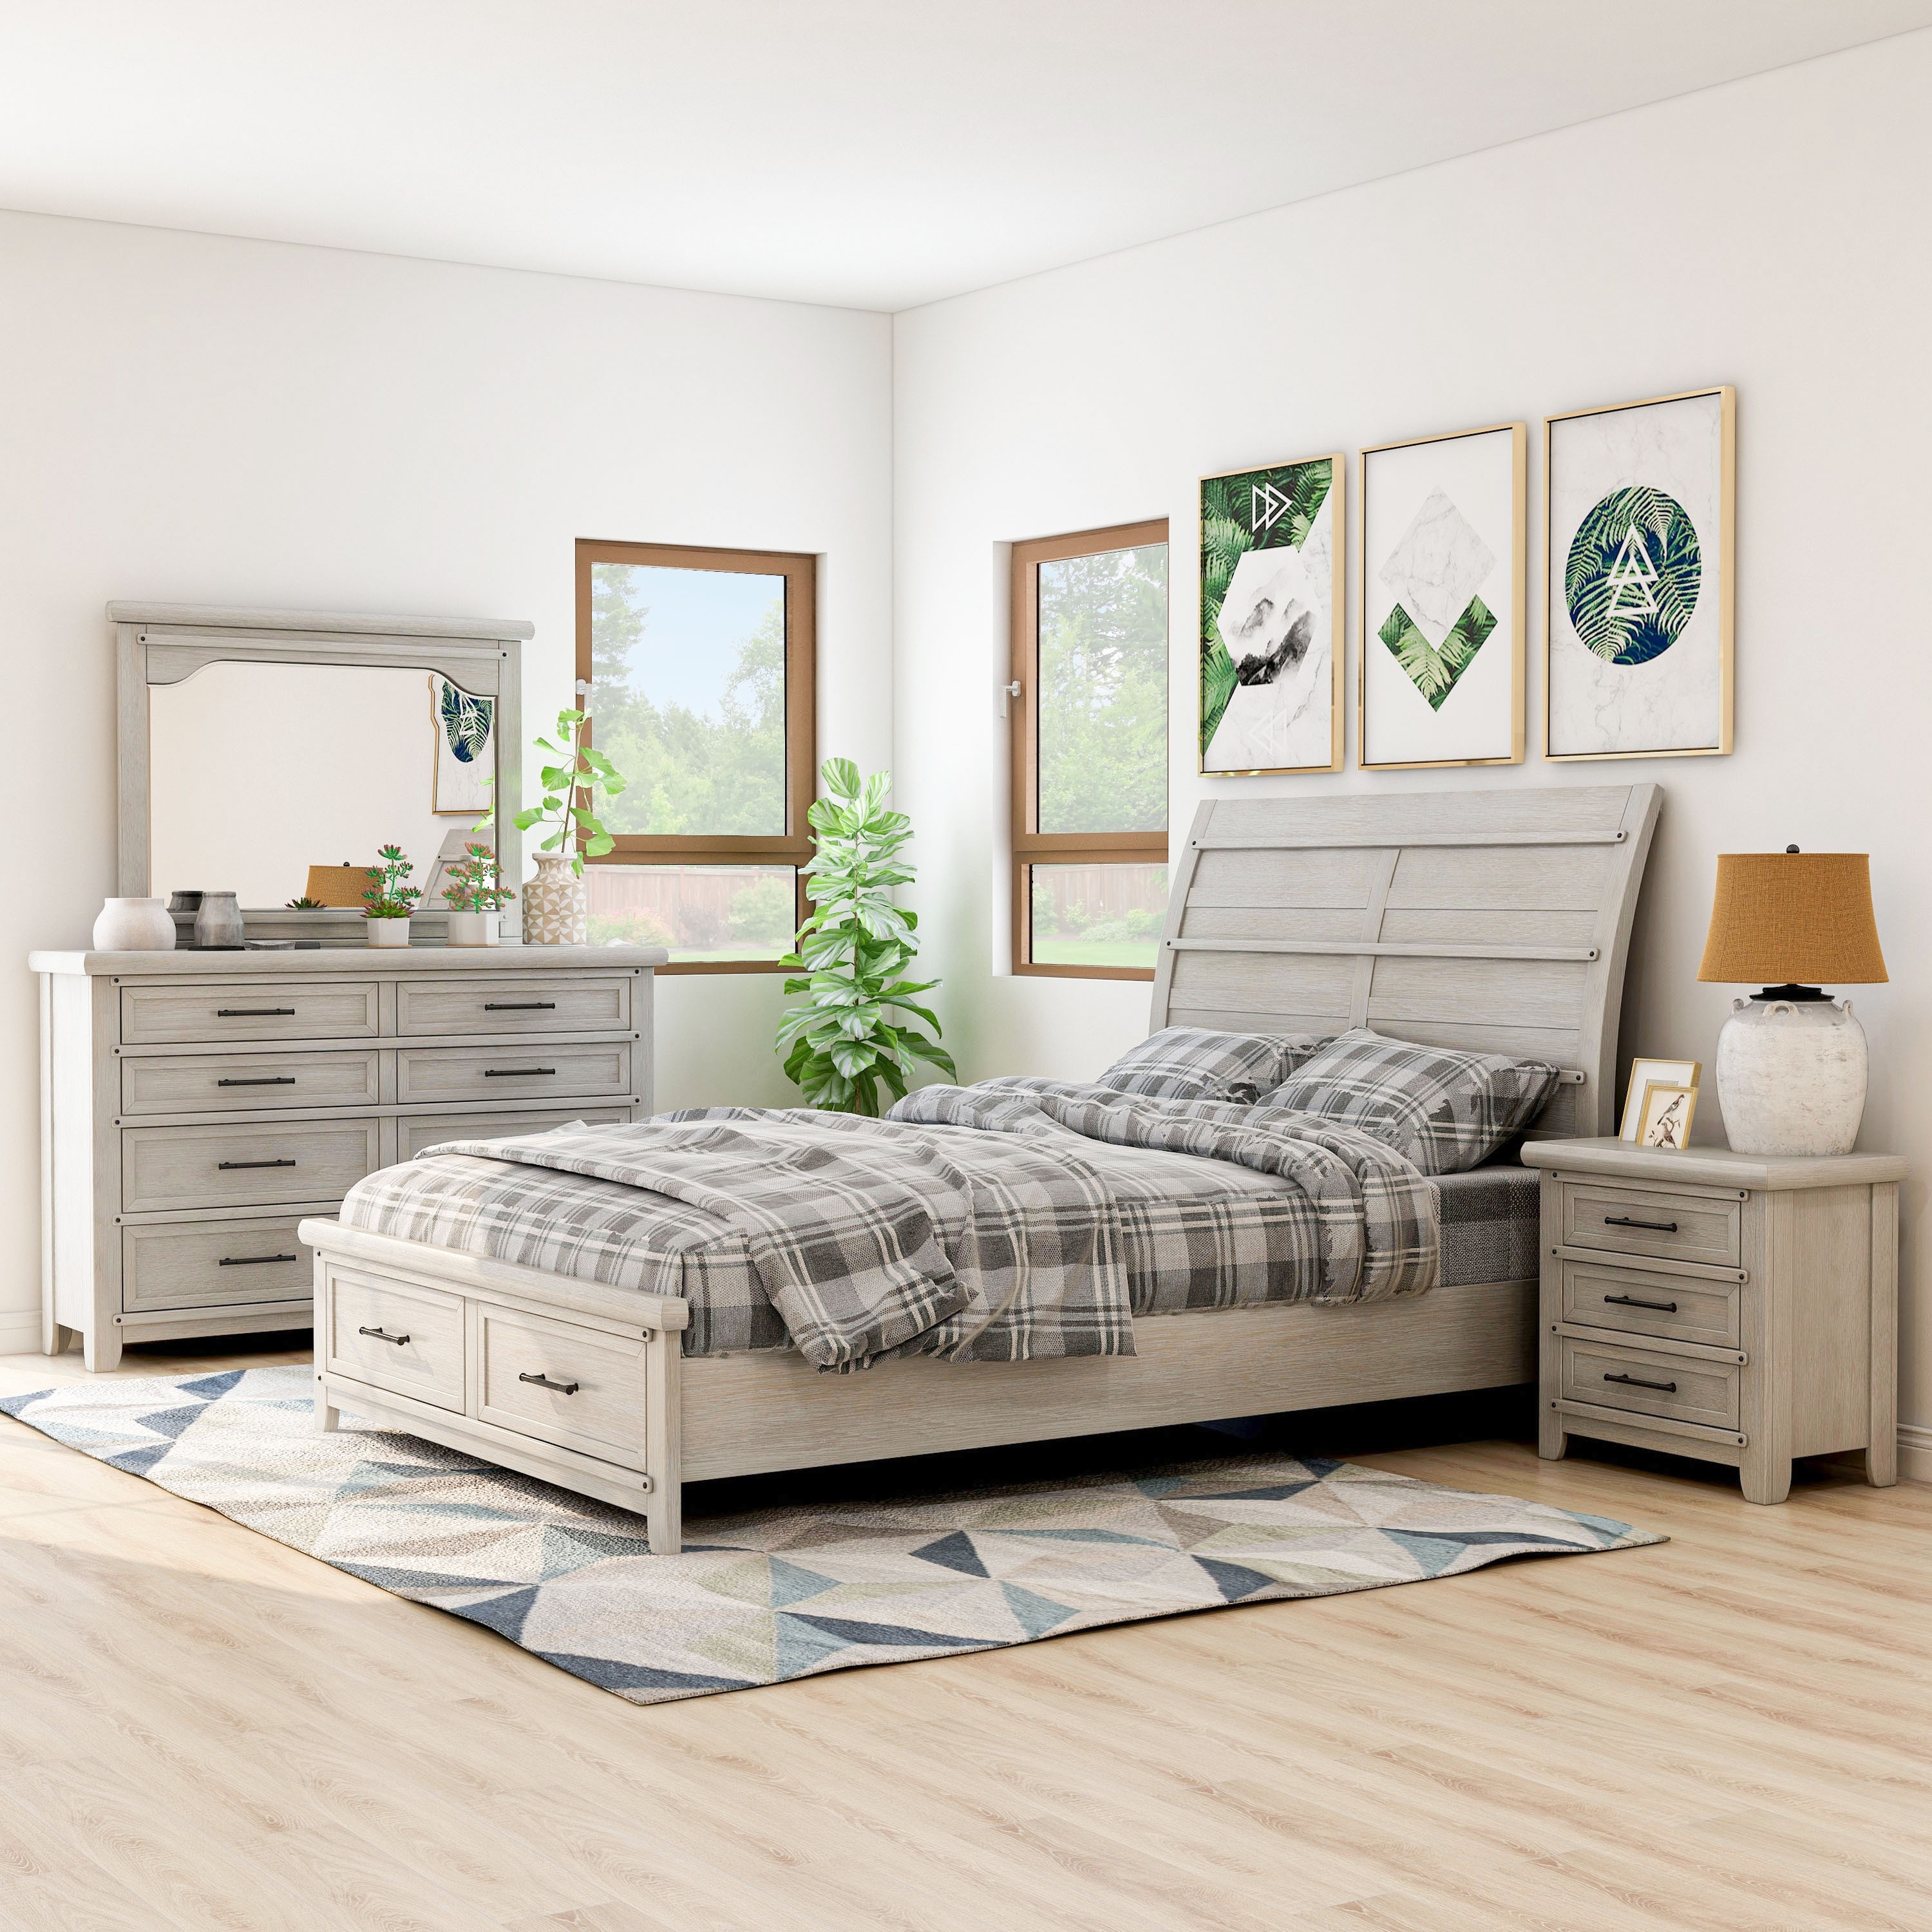 Furniture Of America Tiwo Farmhouse White 4 Piece Bedroom Set